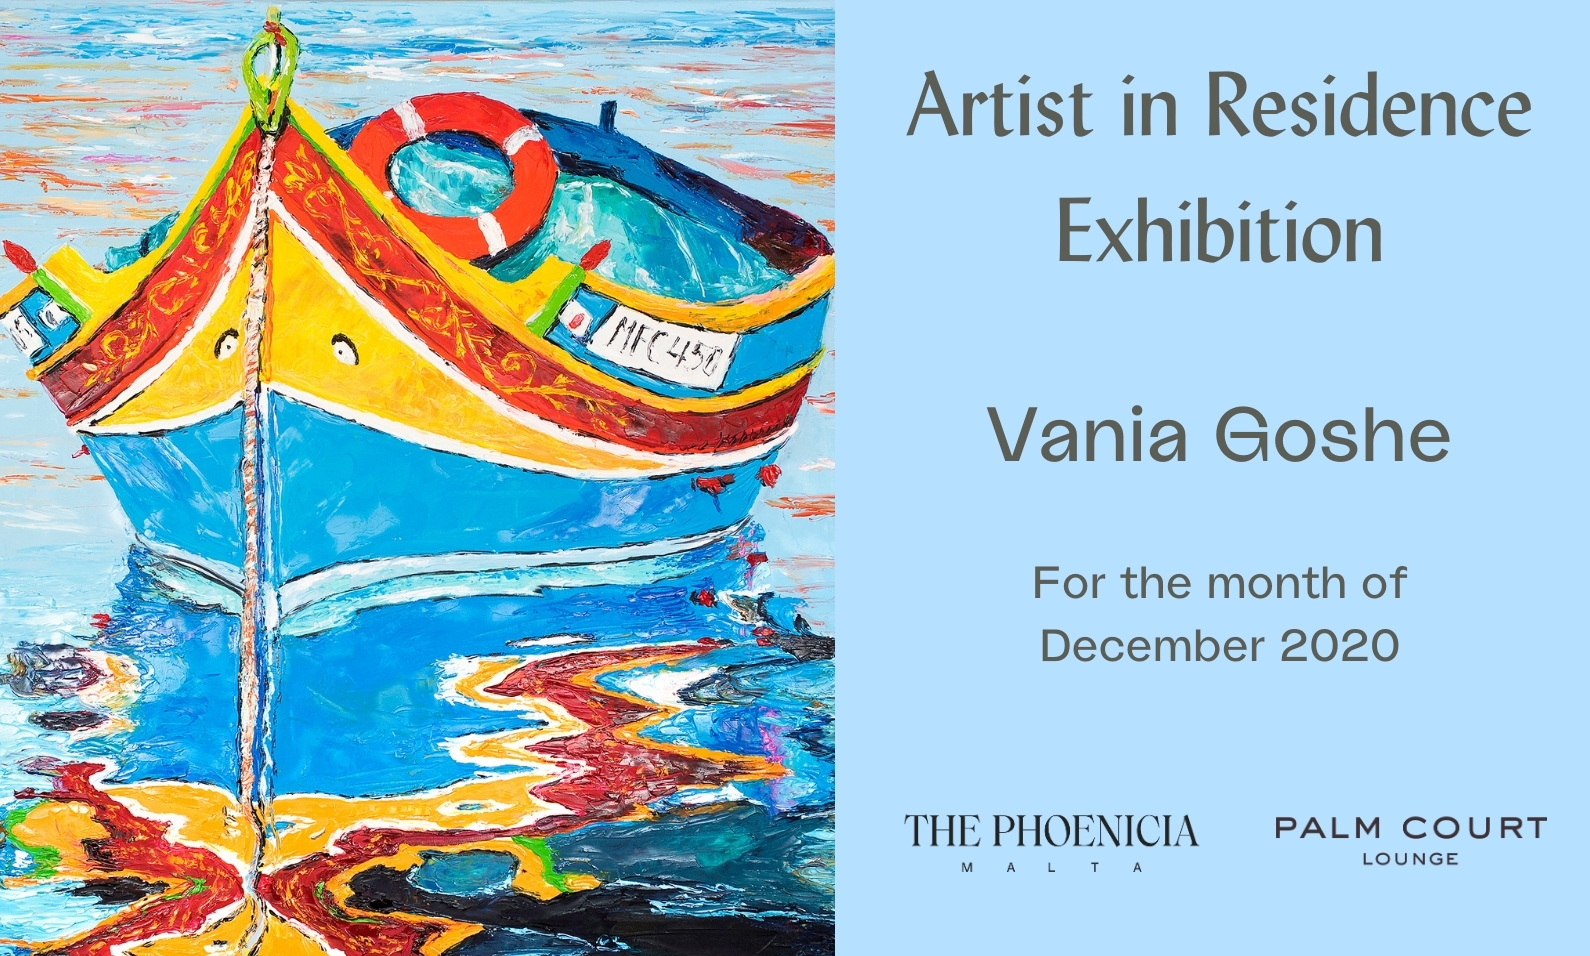 Artist in Residence Exhibition - Vania Goshe